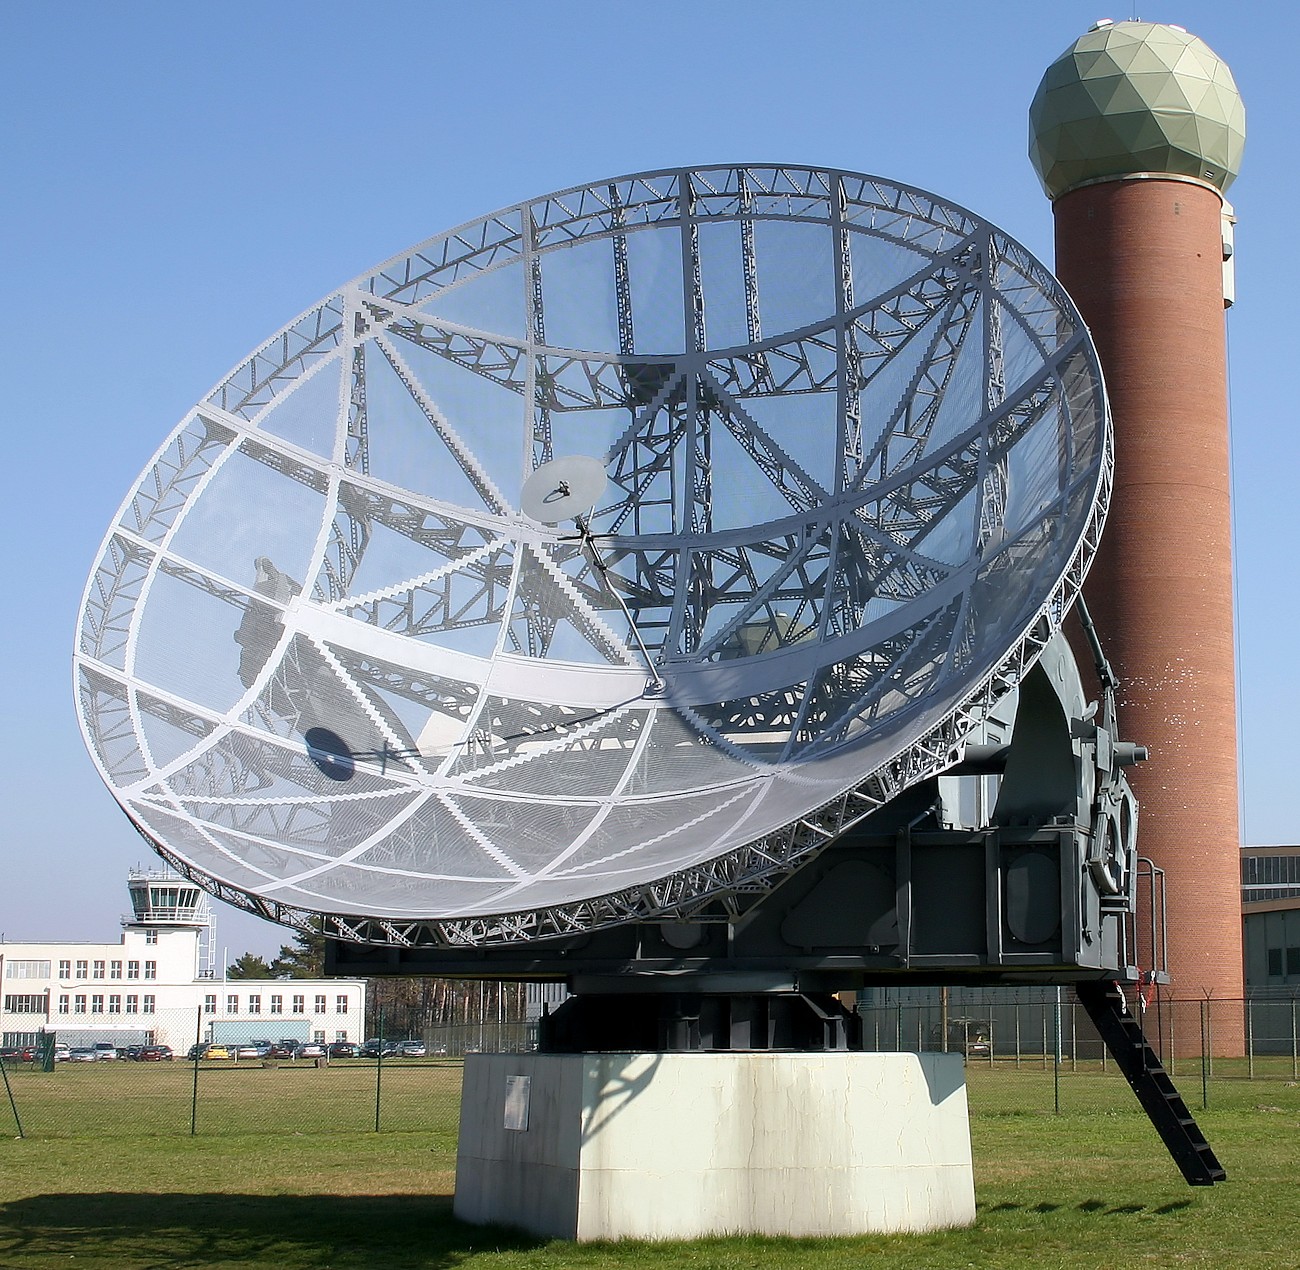 Telefunken Funkmeßgerät - Würzburg Riese - Eines der wichtigsten Radargeräte der Reichsluftverteidigung im Dritten Reich